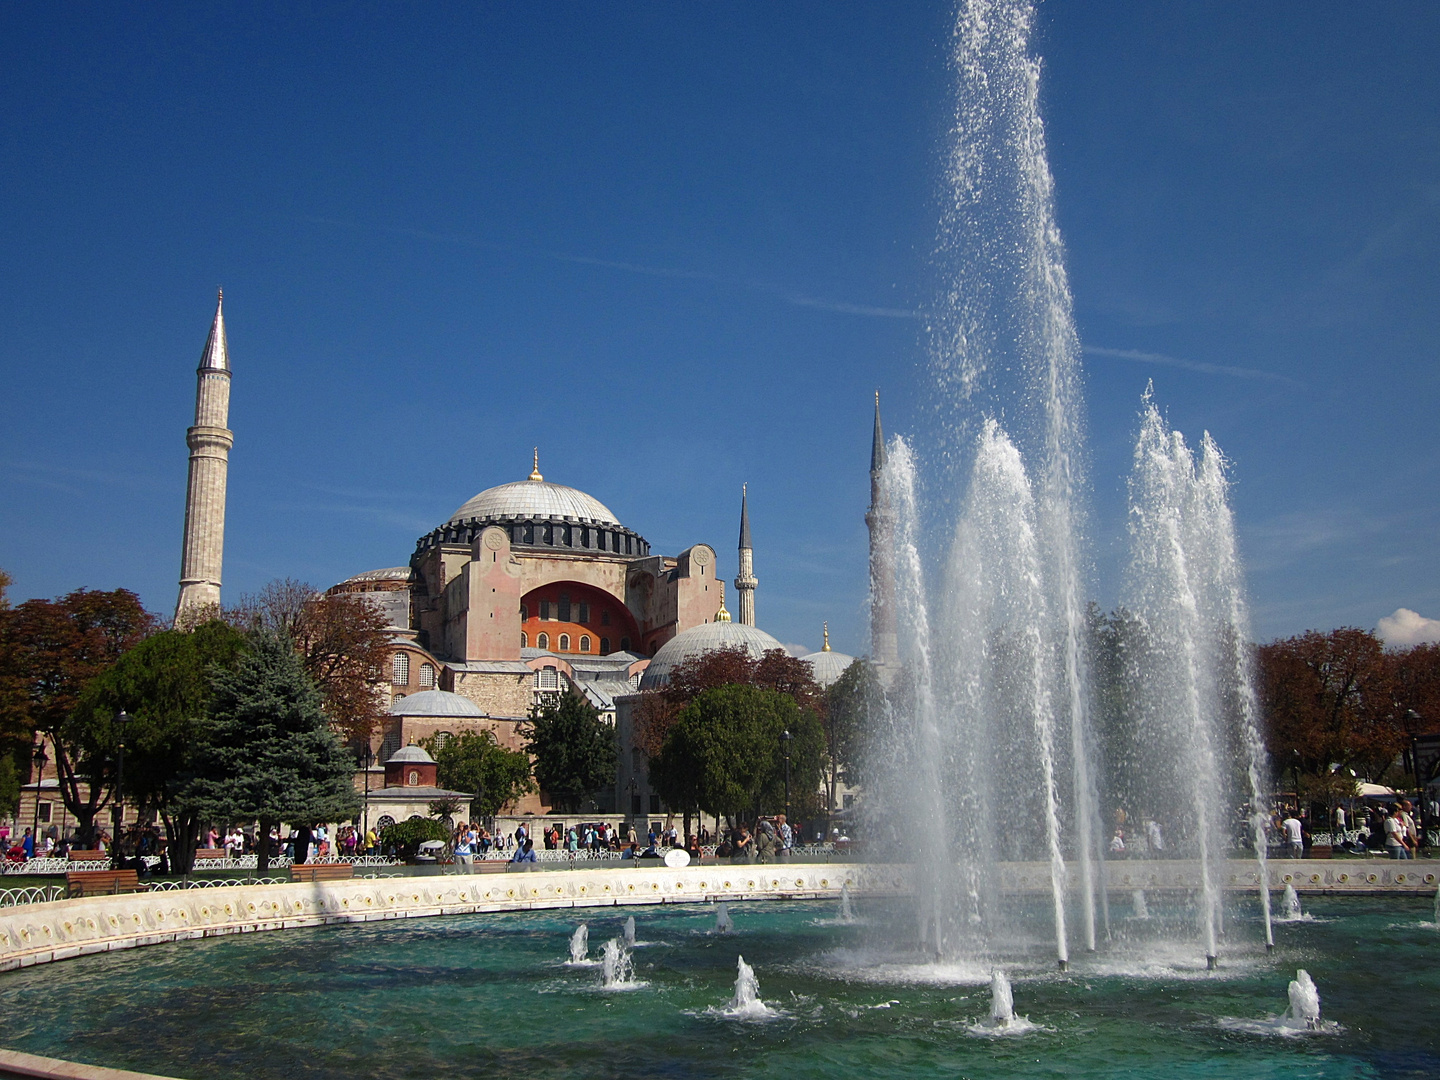 Aya Sofya - Hagia Sophia, #1